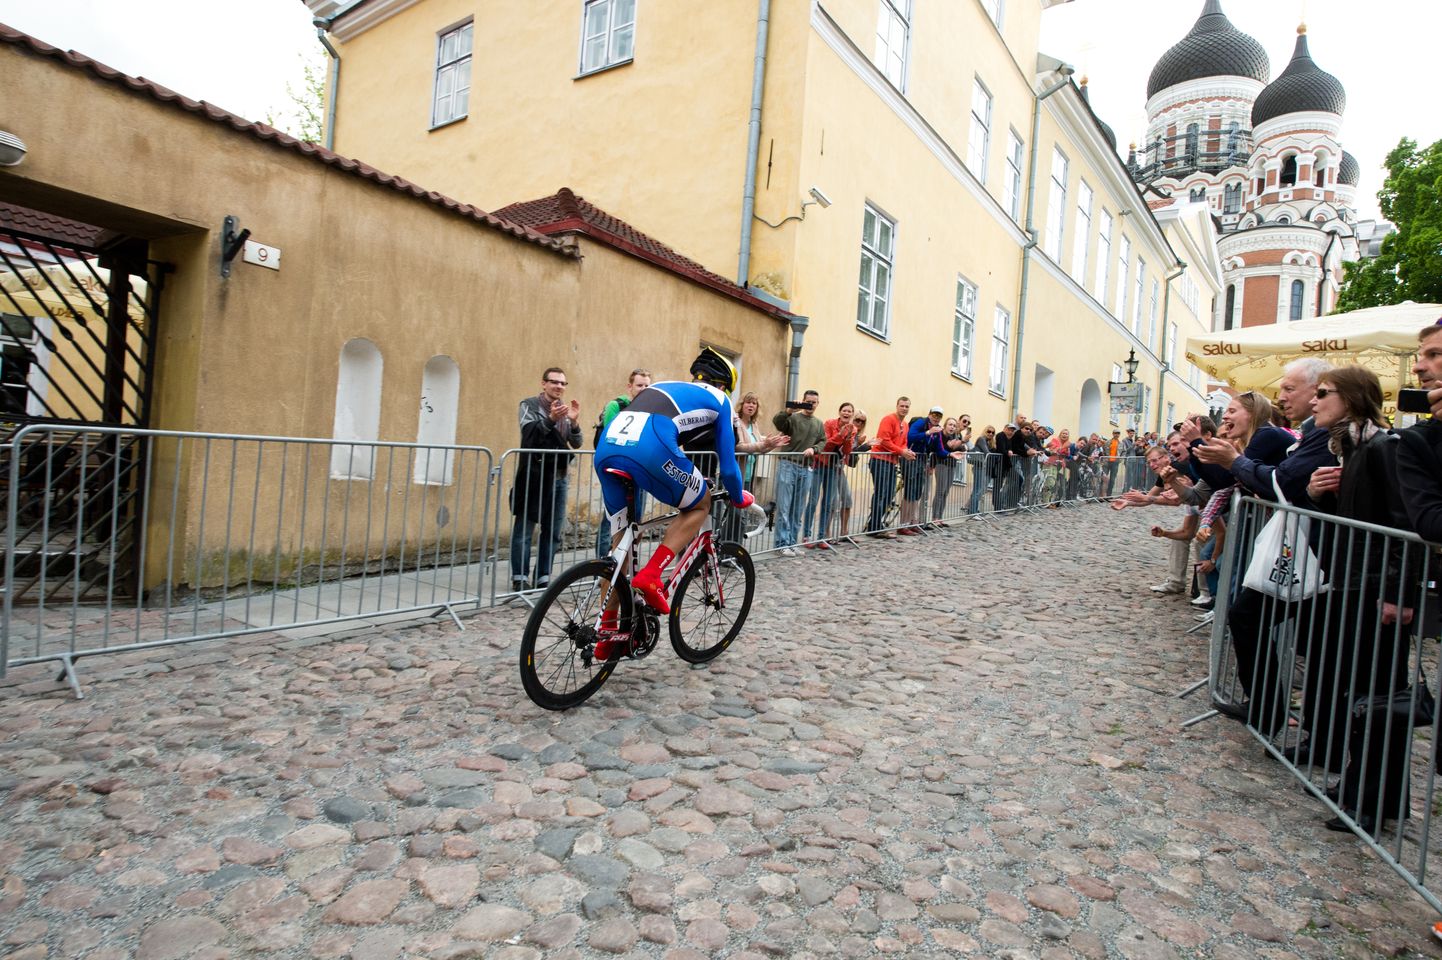 Gert Jõeäär krooniti 2013. aastal toimunud esimese Tour of Estonia võitjaks. Ka teised Eestisse jäänud võidud on tulnud paaritutel aastatel (2015 ja 2017).